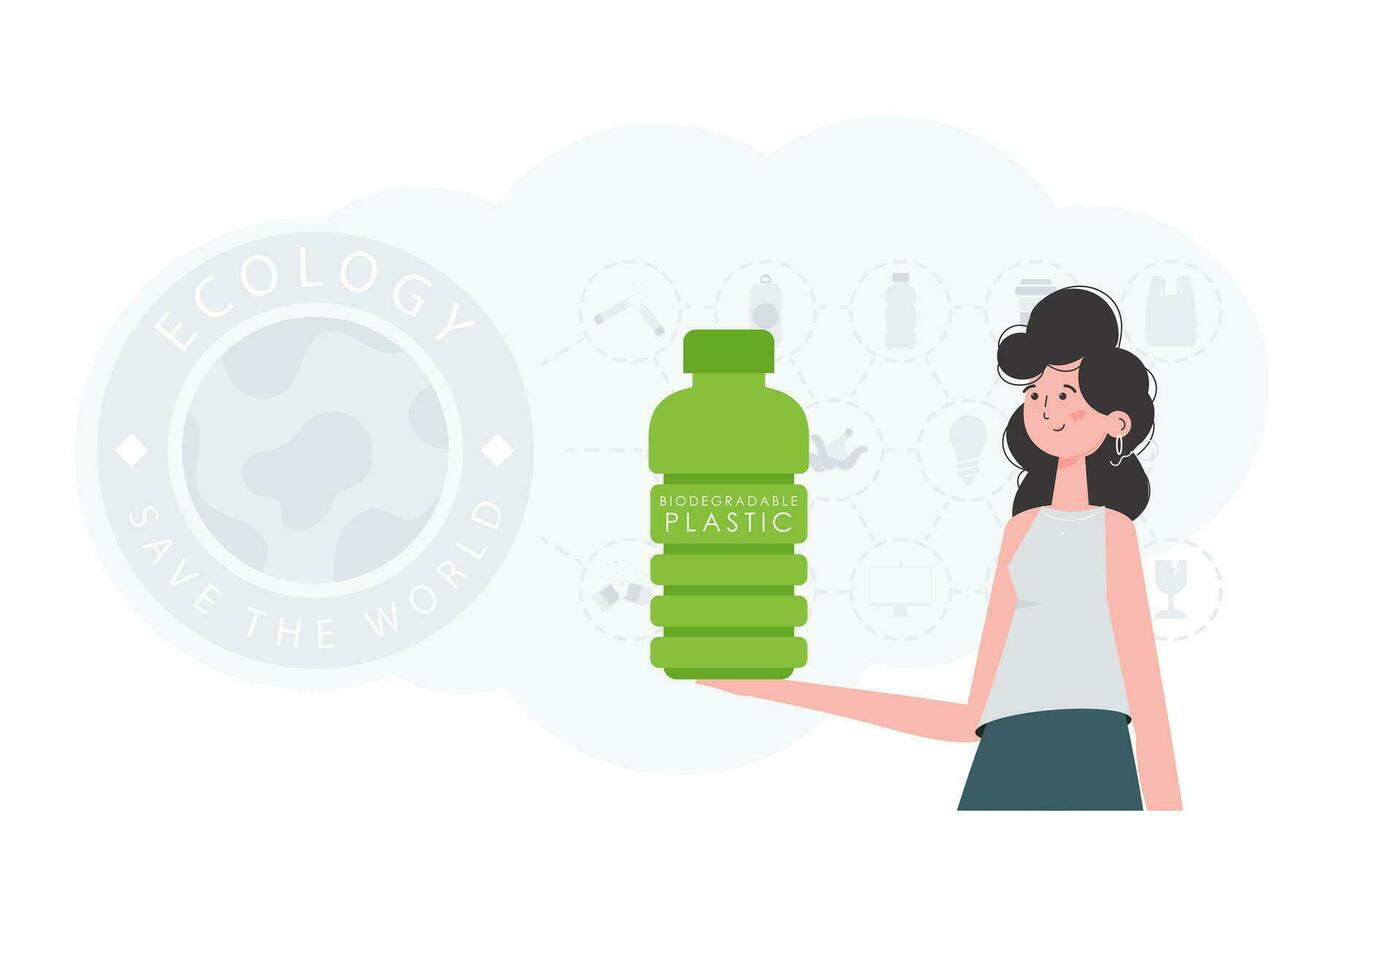 de concept van ecologie en zorg voor de omgeving. de meisje houdt een fles gemaakt van biologisch afbreekbaar plastic in haar handen. mode neiging vector illustratie.